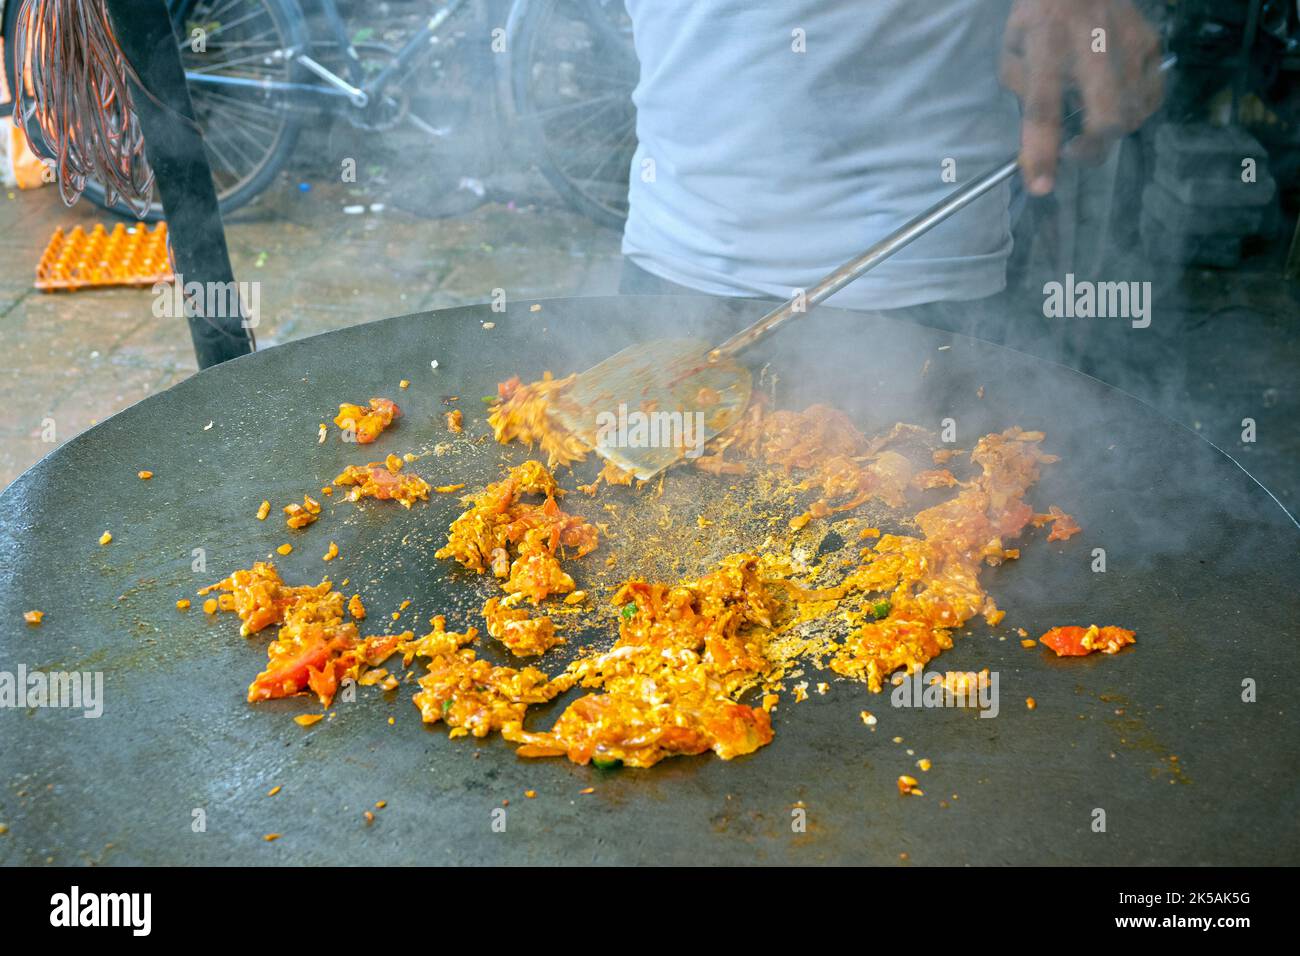 Personne cuisant une omelette épicée traditionnelle sur une poêle à frire chaude dans le marché de rue asiatique, Inde Banque D'Images